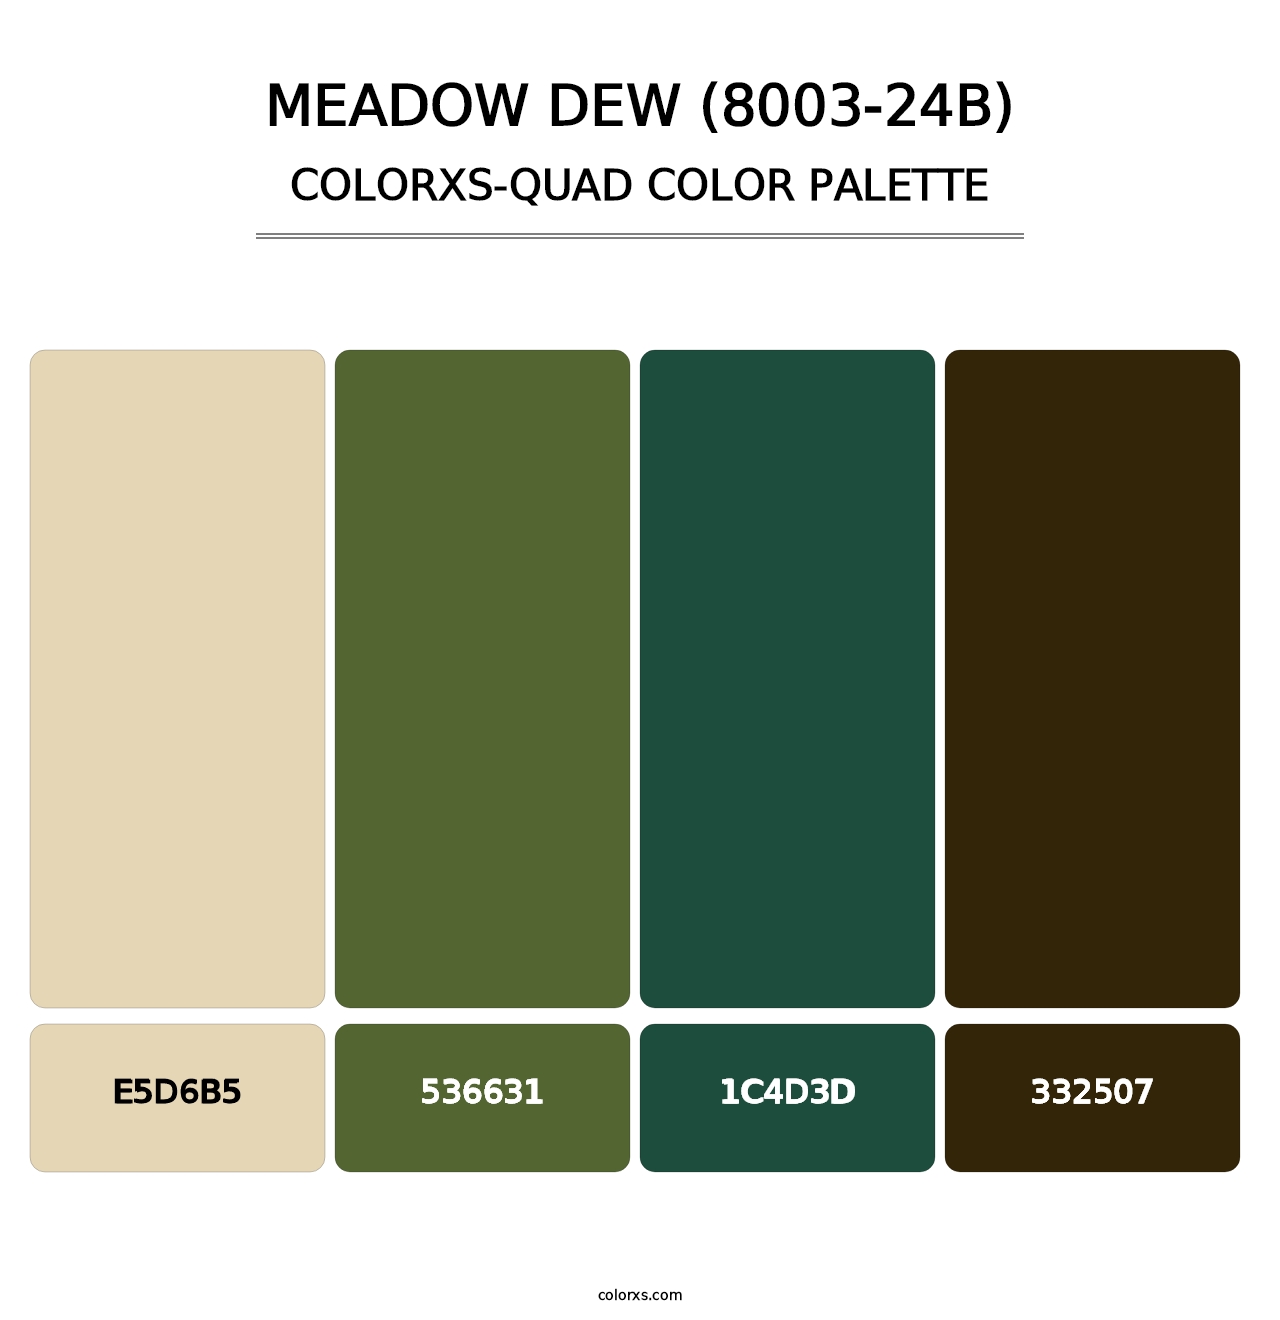 Meadow Dew (8003-24B) - Colorxs Quad Palette